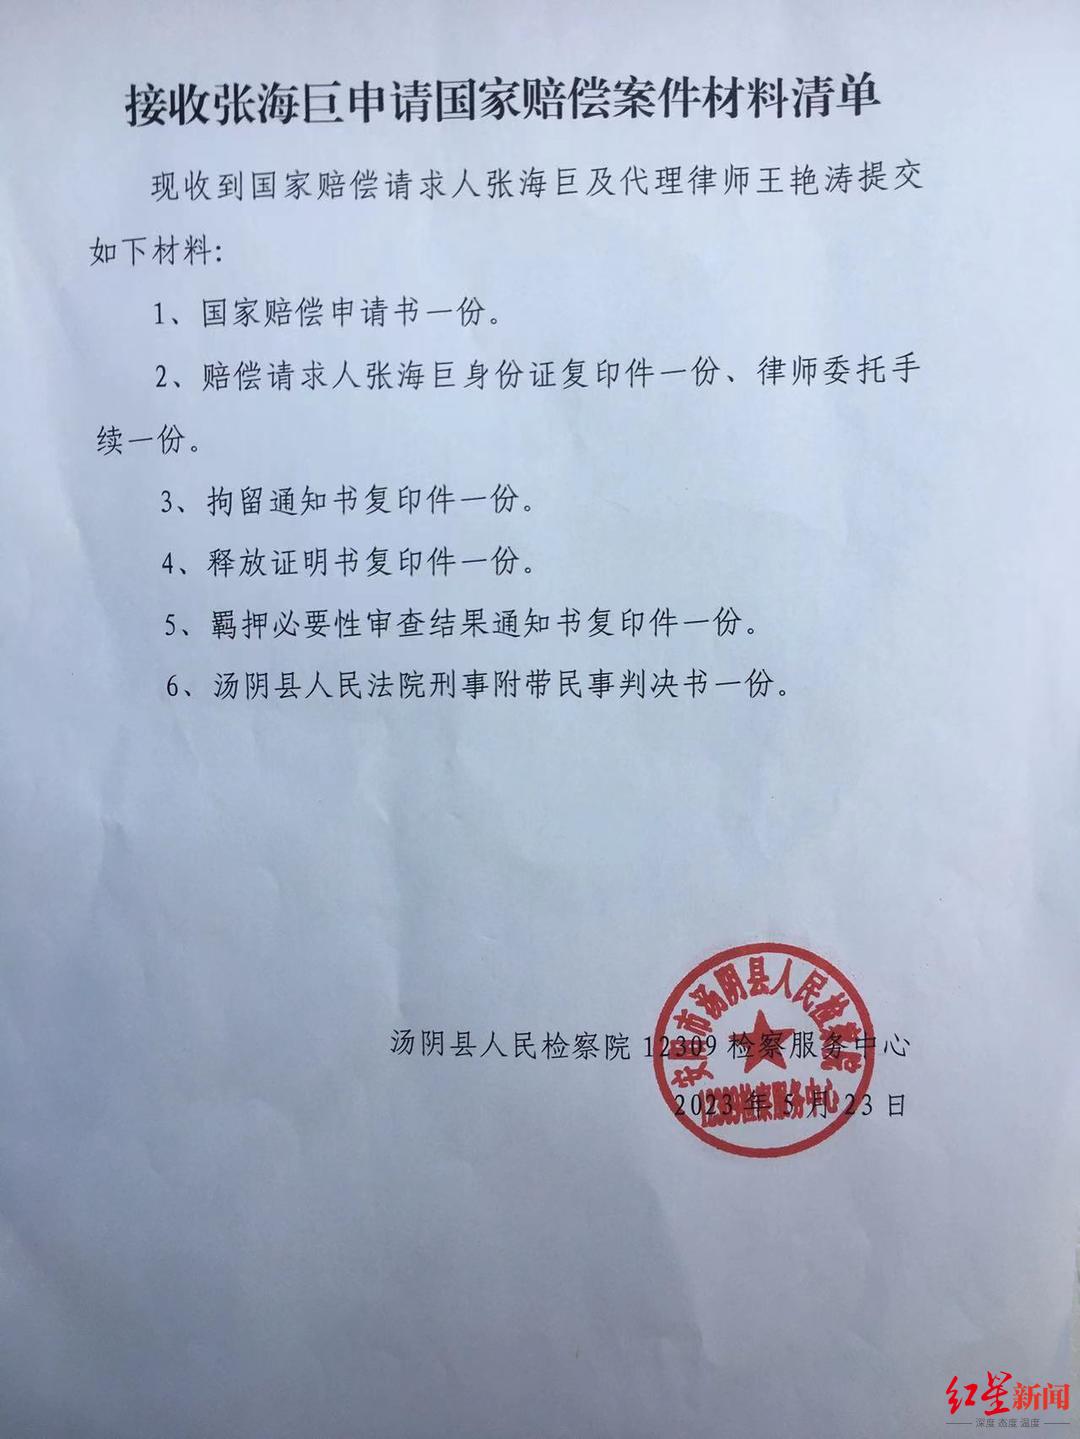 ↑汤阴县检察院已接收了相关材料